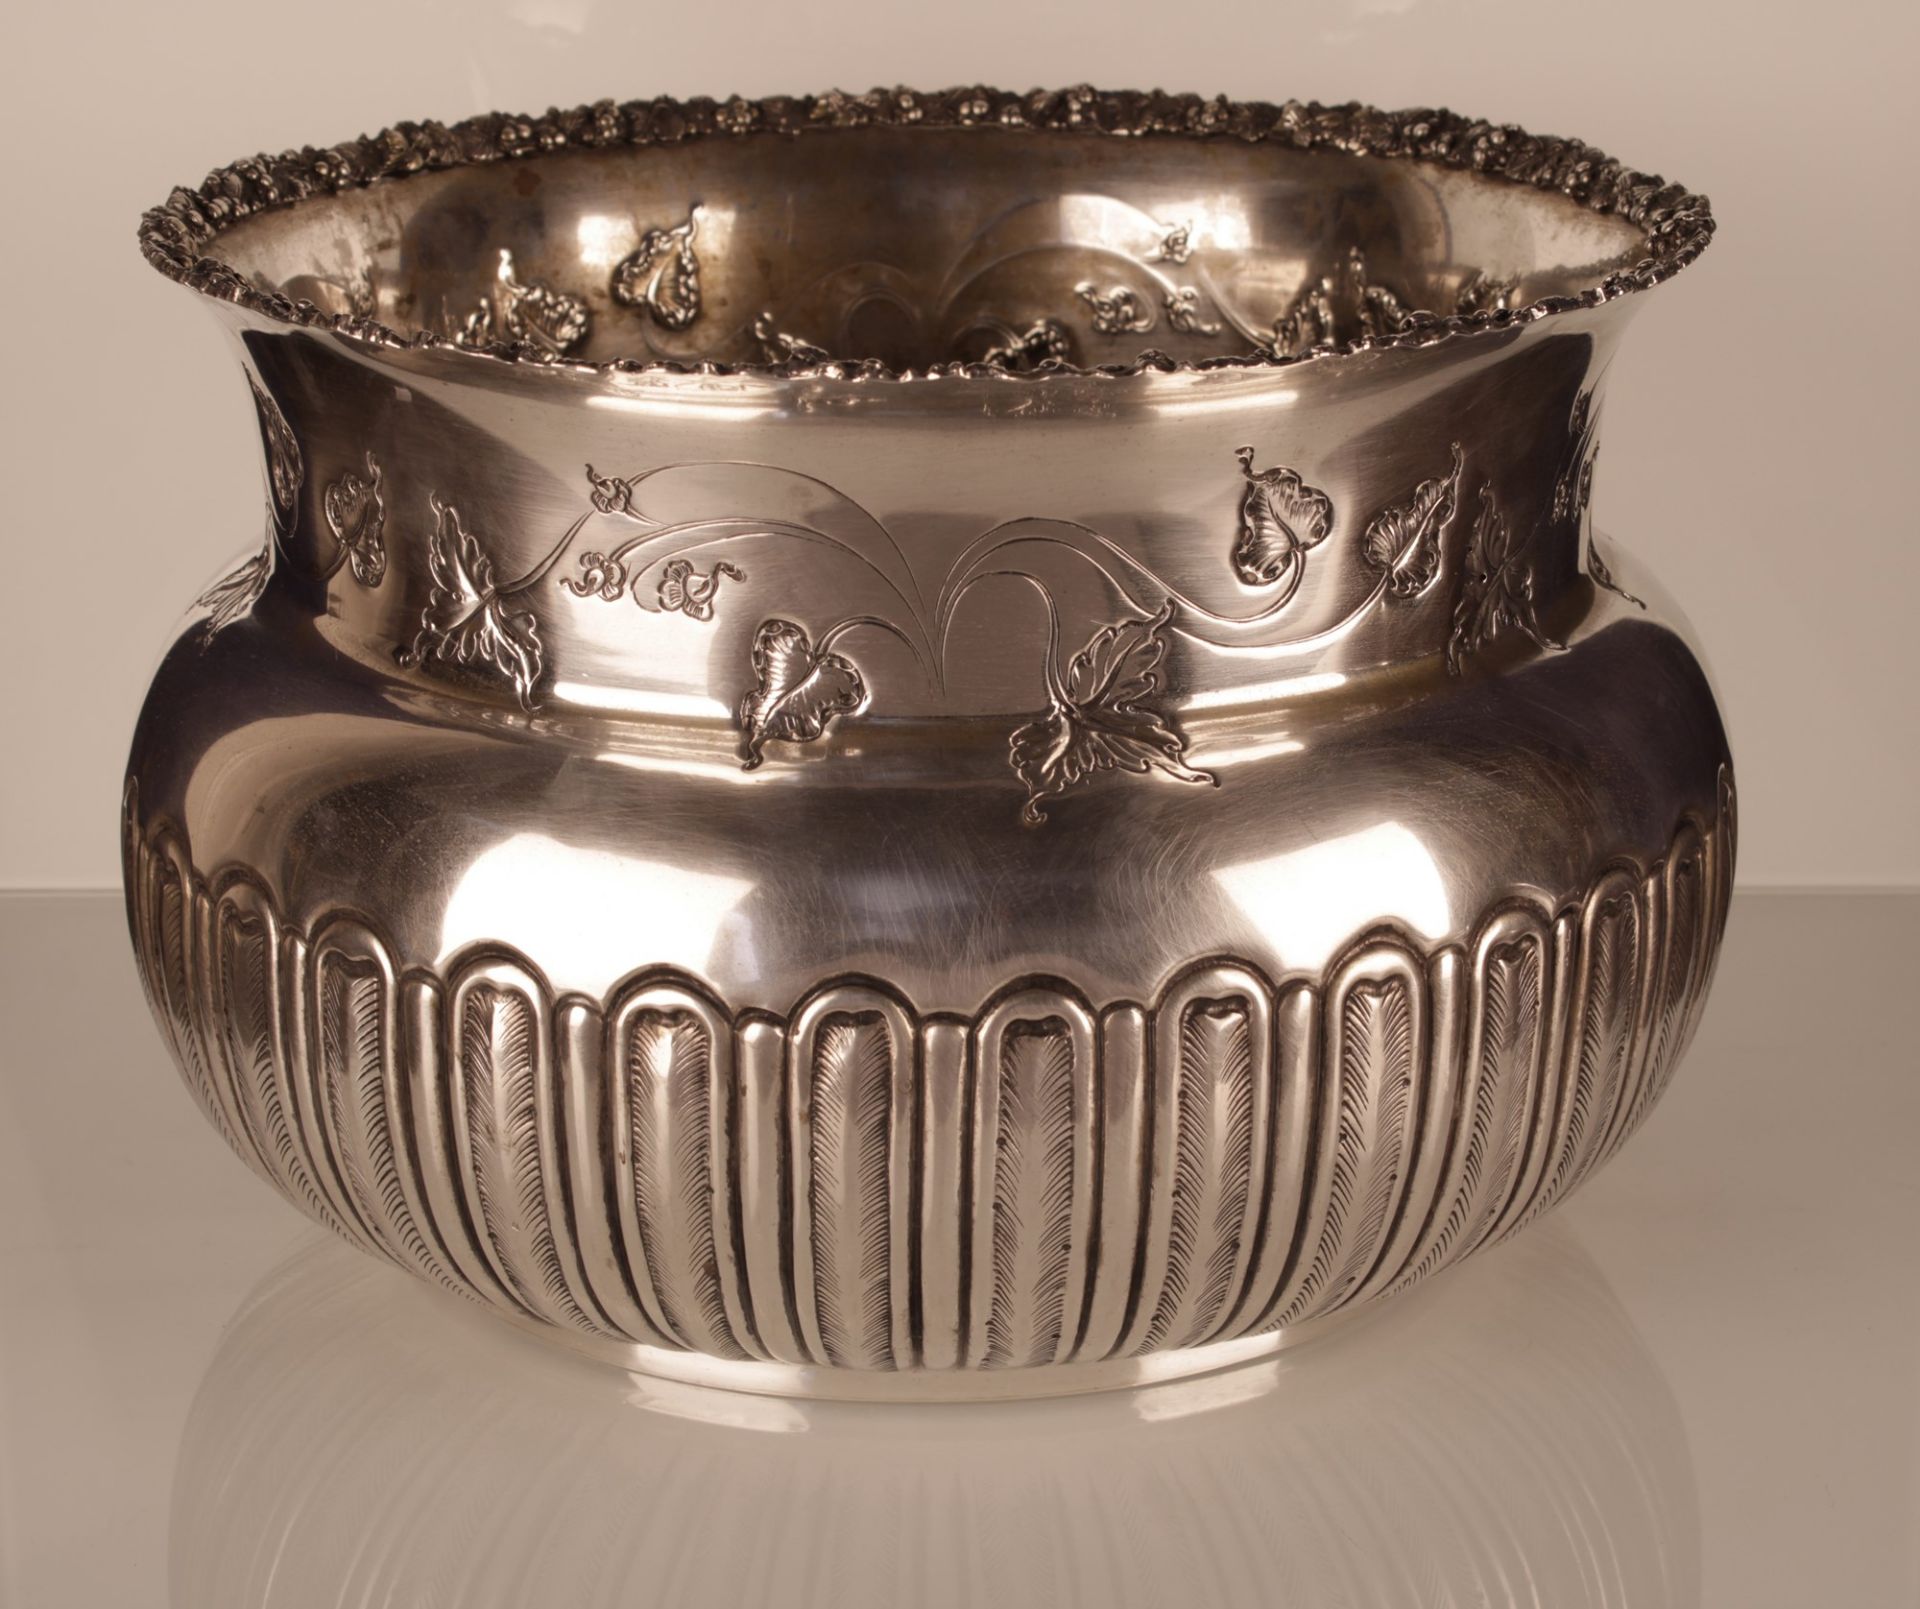 Grande bacile in argento 800/000 con punzone Argenteria Balducci finemente decorato - Image 2 of 4